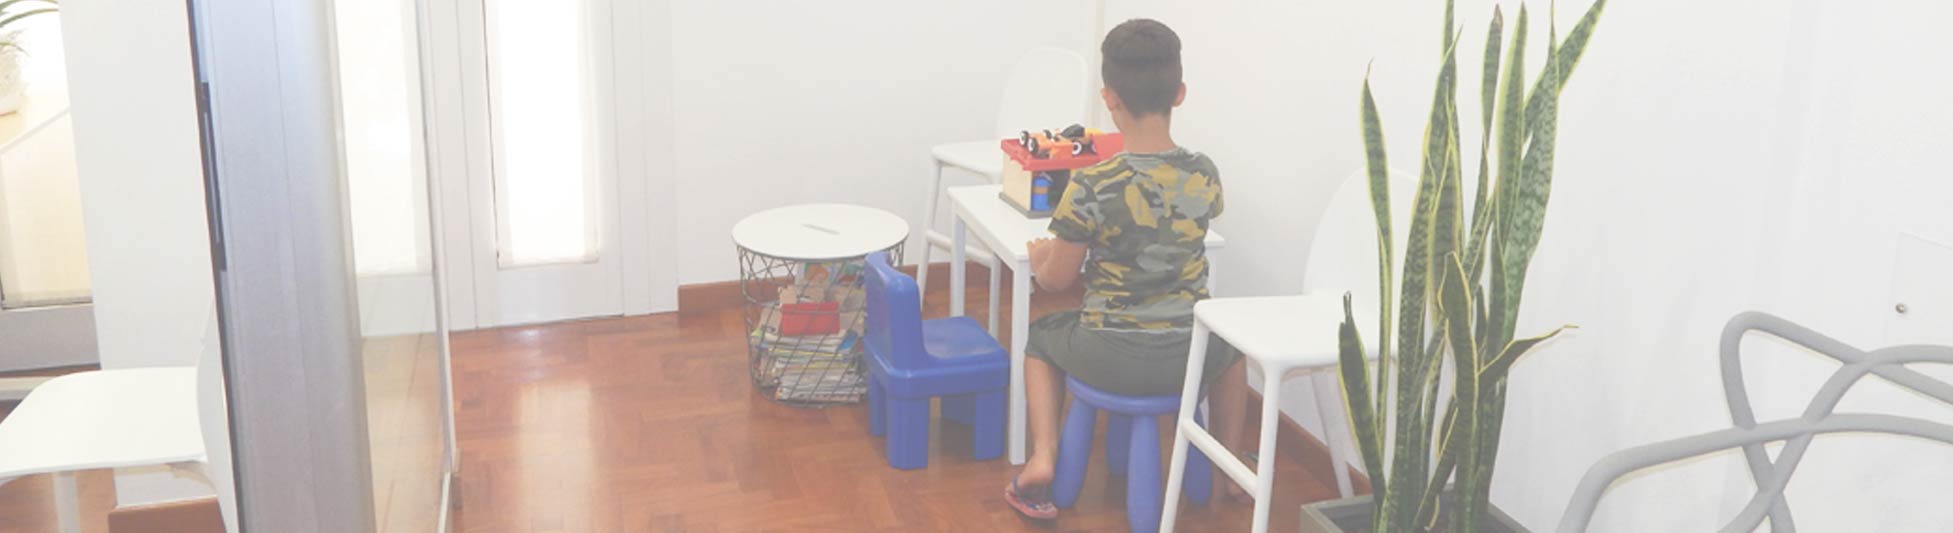 Sala d'attesa baby: spazio ricreativo per i bambini che attendono il loro turno dal dentista